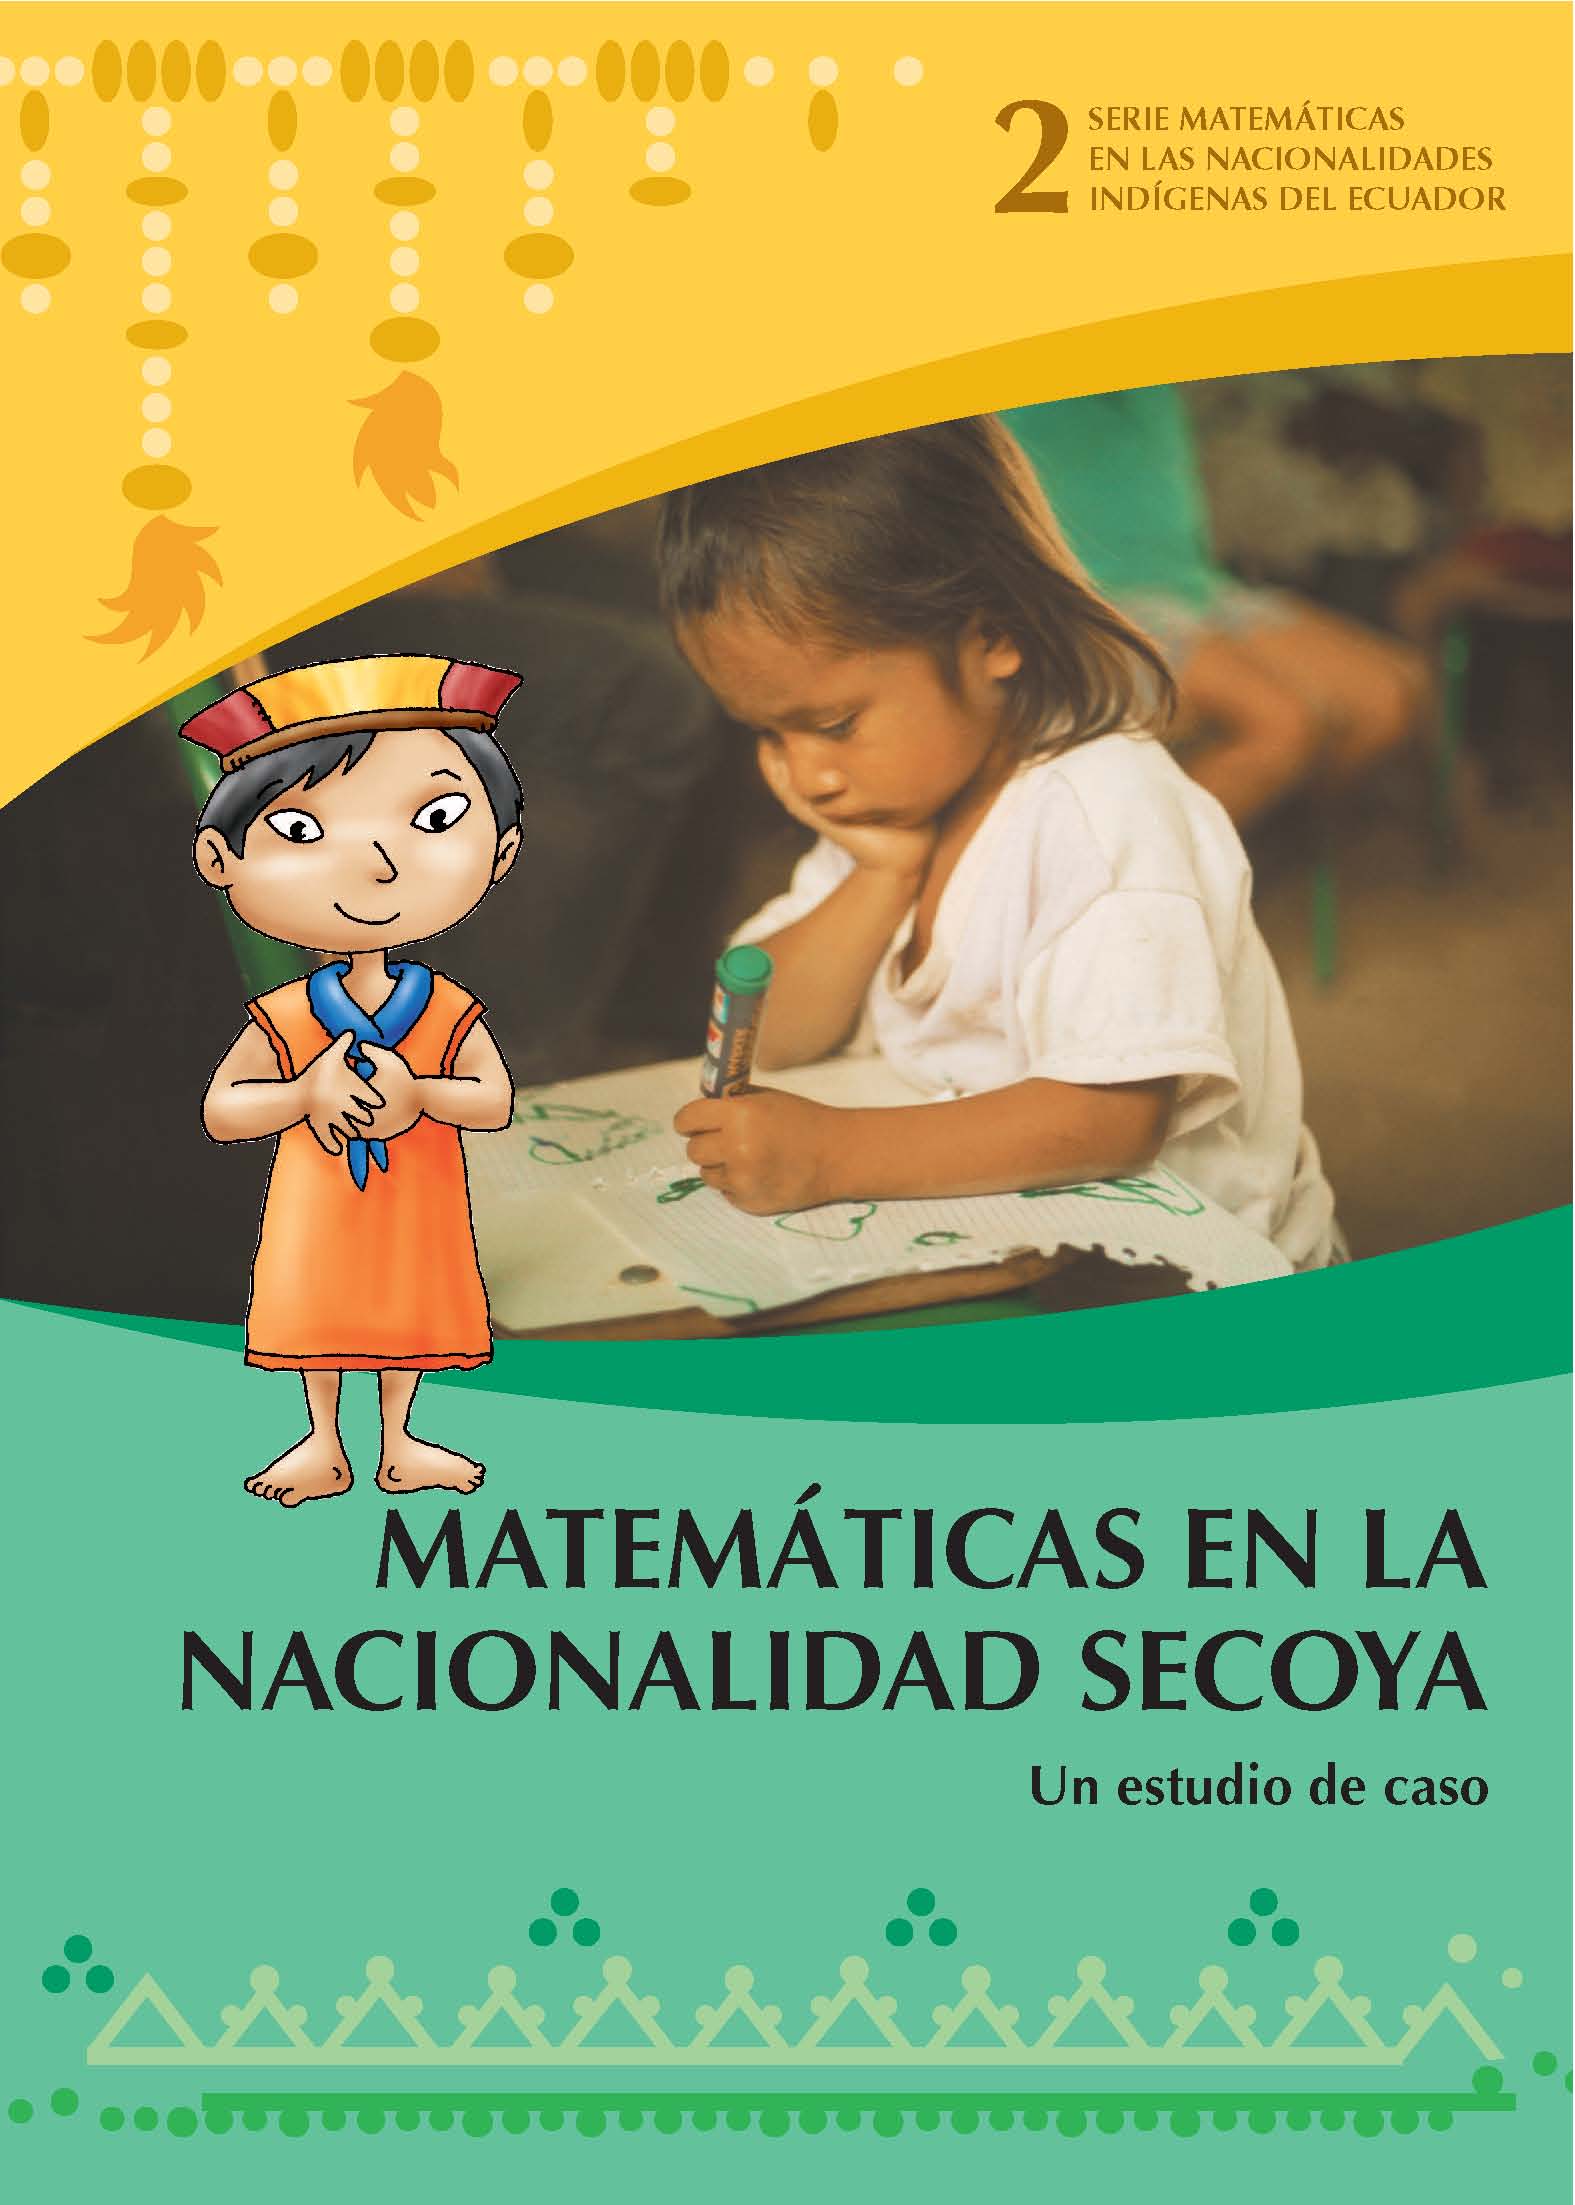 Piaguaje, Celestino <br>Matemáticas en la nacionalidad Secoya: un estudio de caso<br/>Quito: UNICEF : DINEIB : Universidad de Cuenca. 2006. 24 páginas 